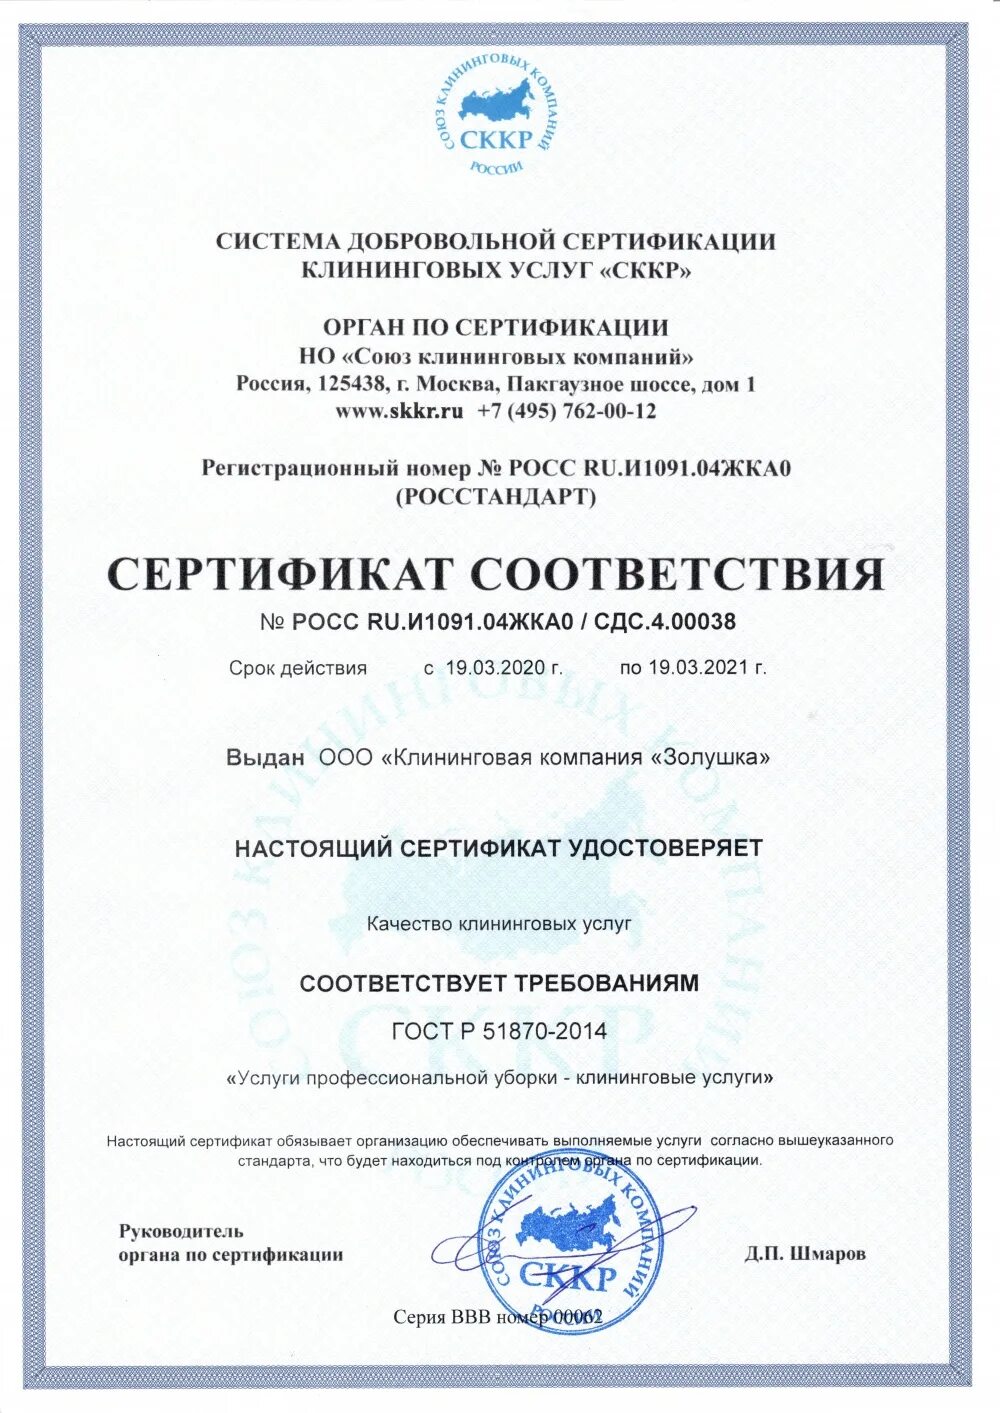 Гост клининговая уборка. Сертификат на клининг. Сертификат на клининговые услуги. ГОСТ 51870-2014. Сертификат клининговой компании.